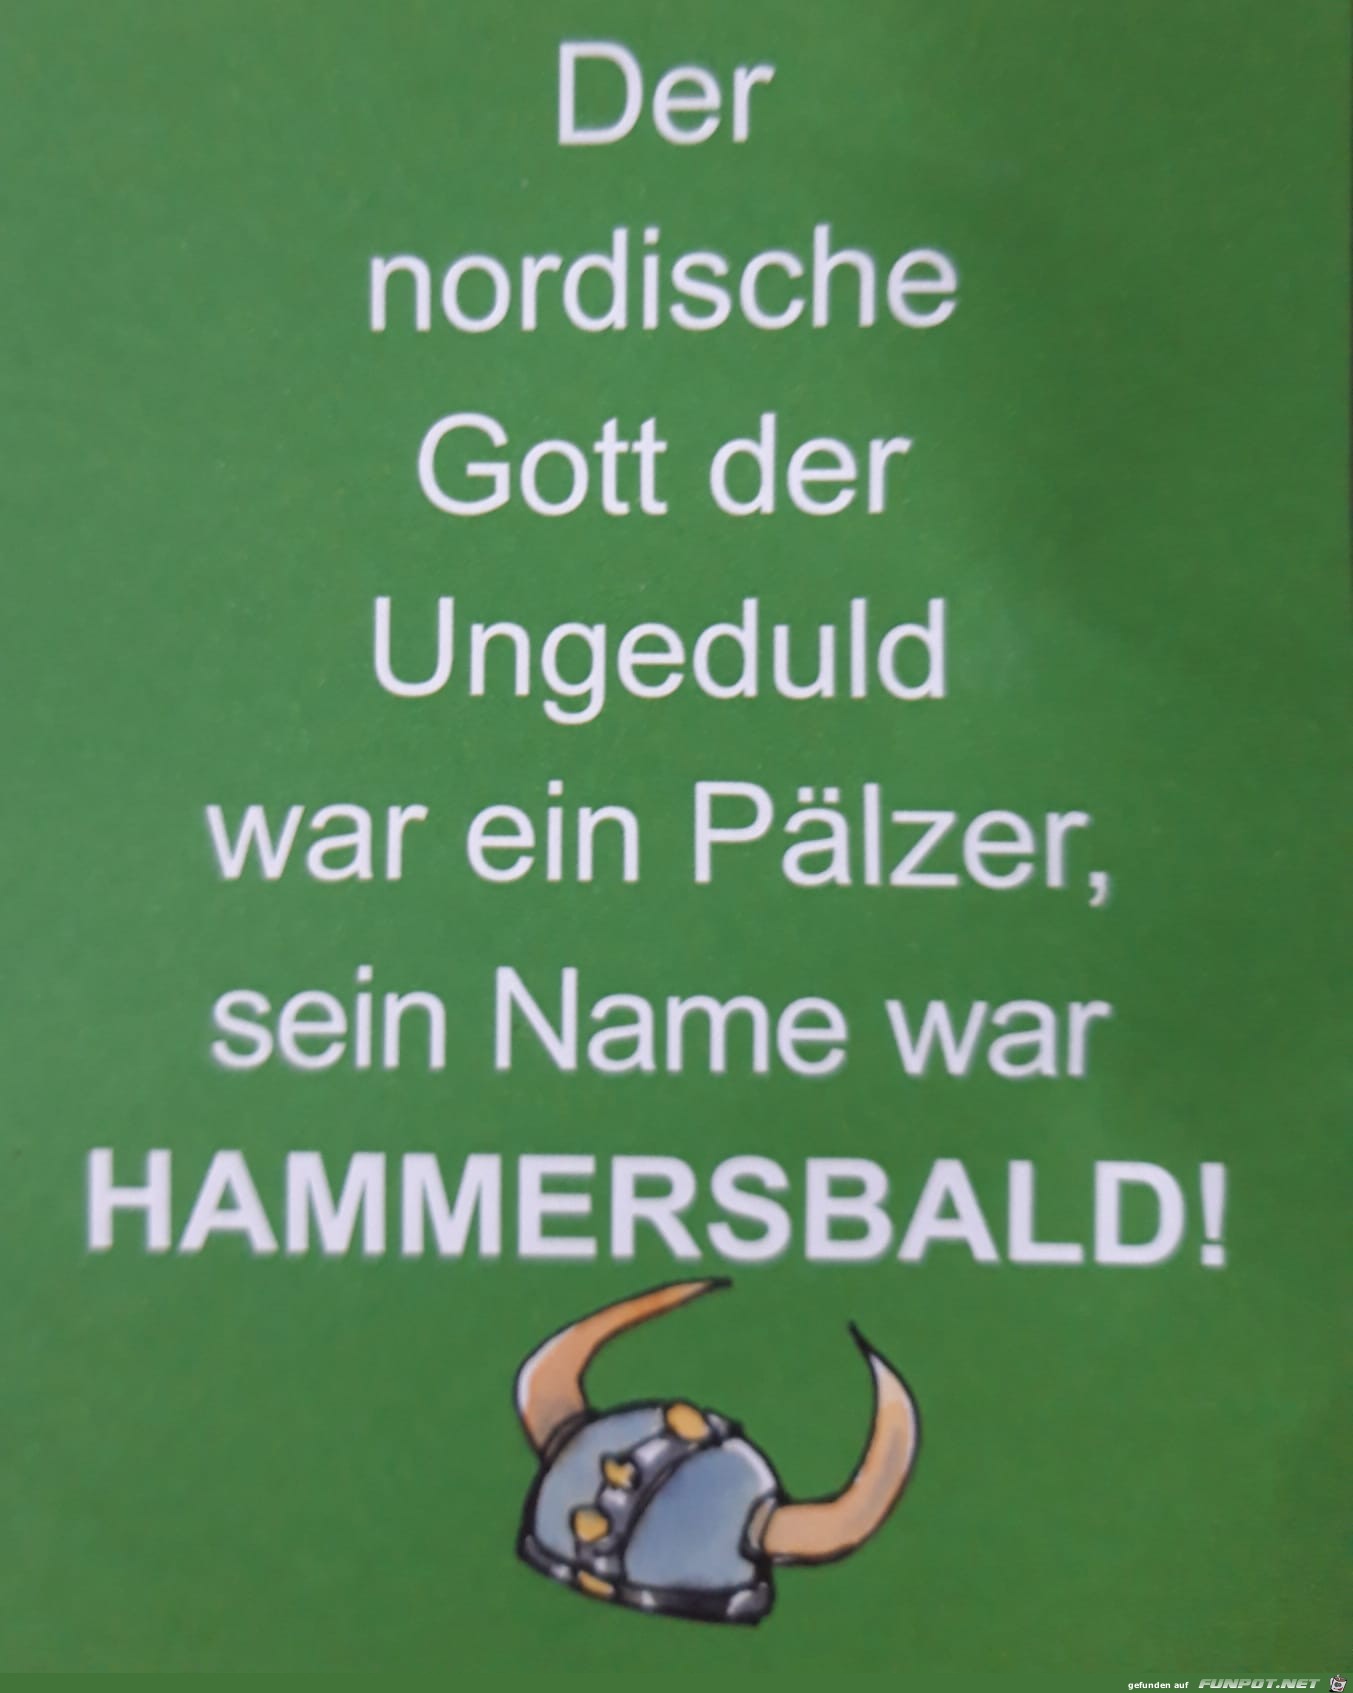 Hammersbald